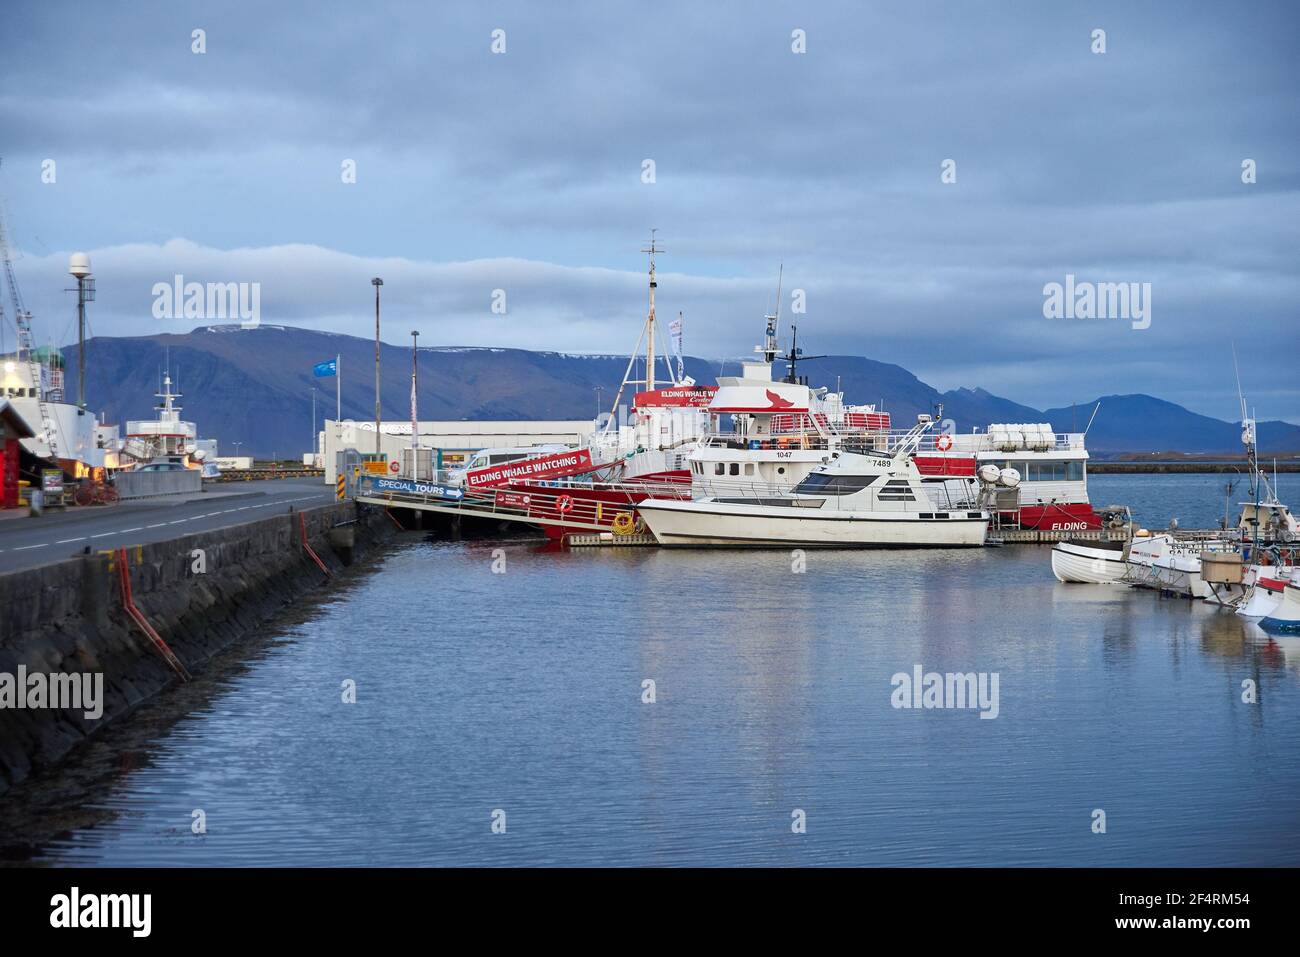 Reykjavik, Islande - 16 octobre 2016 : de nombreux bateaux et navires différents dans le port de la ville Banque D'Images